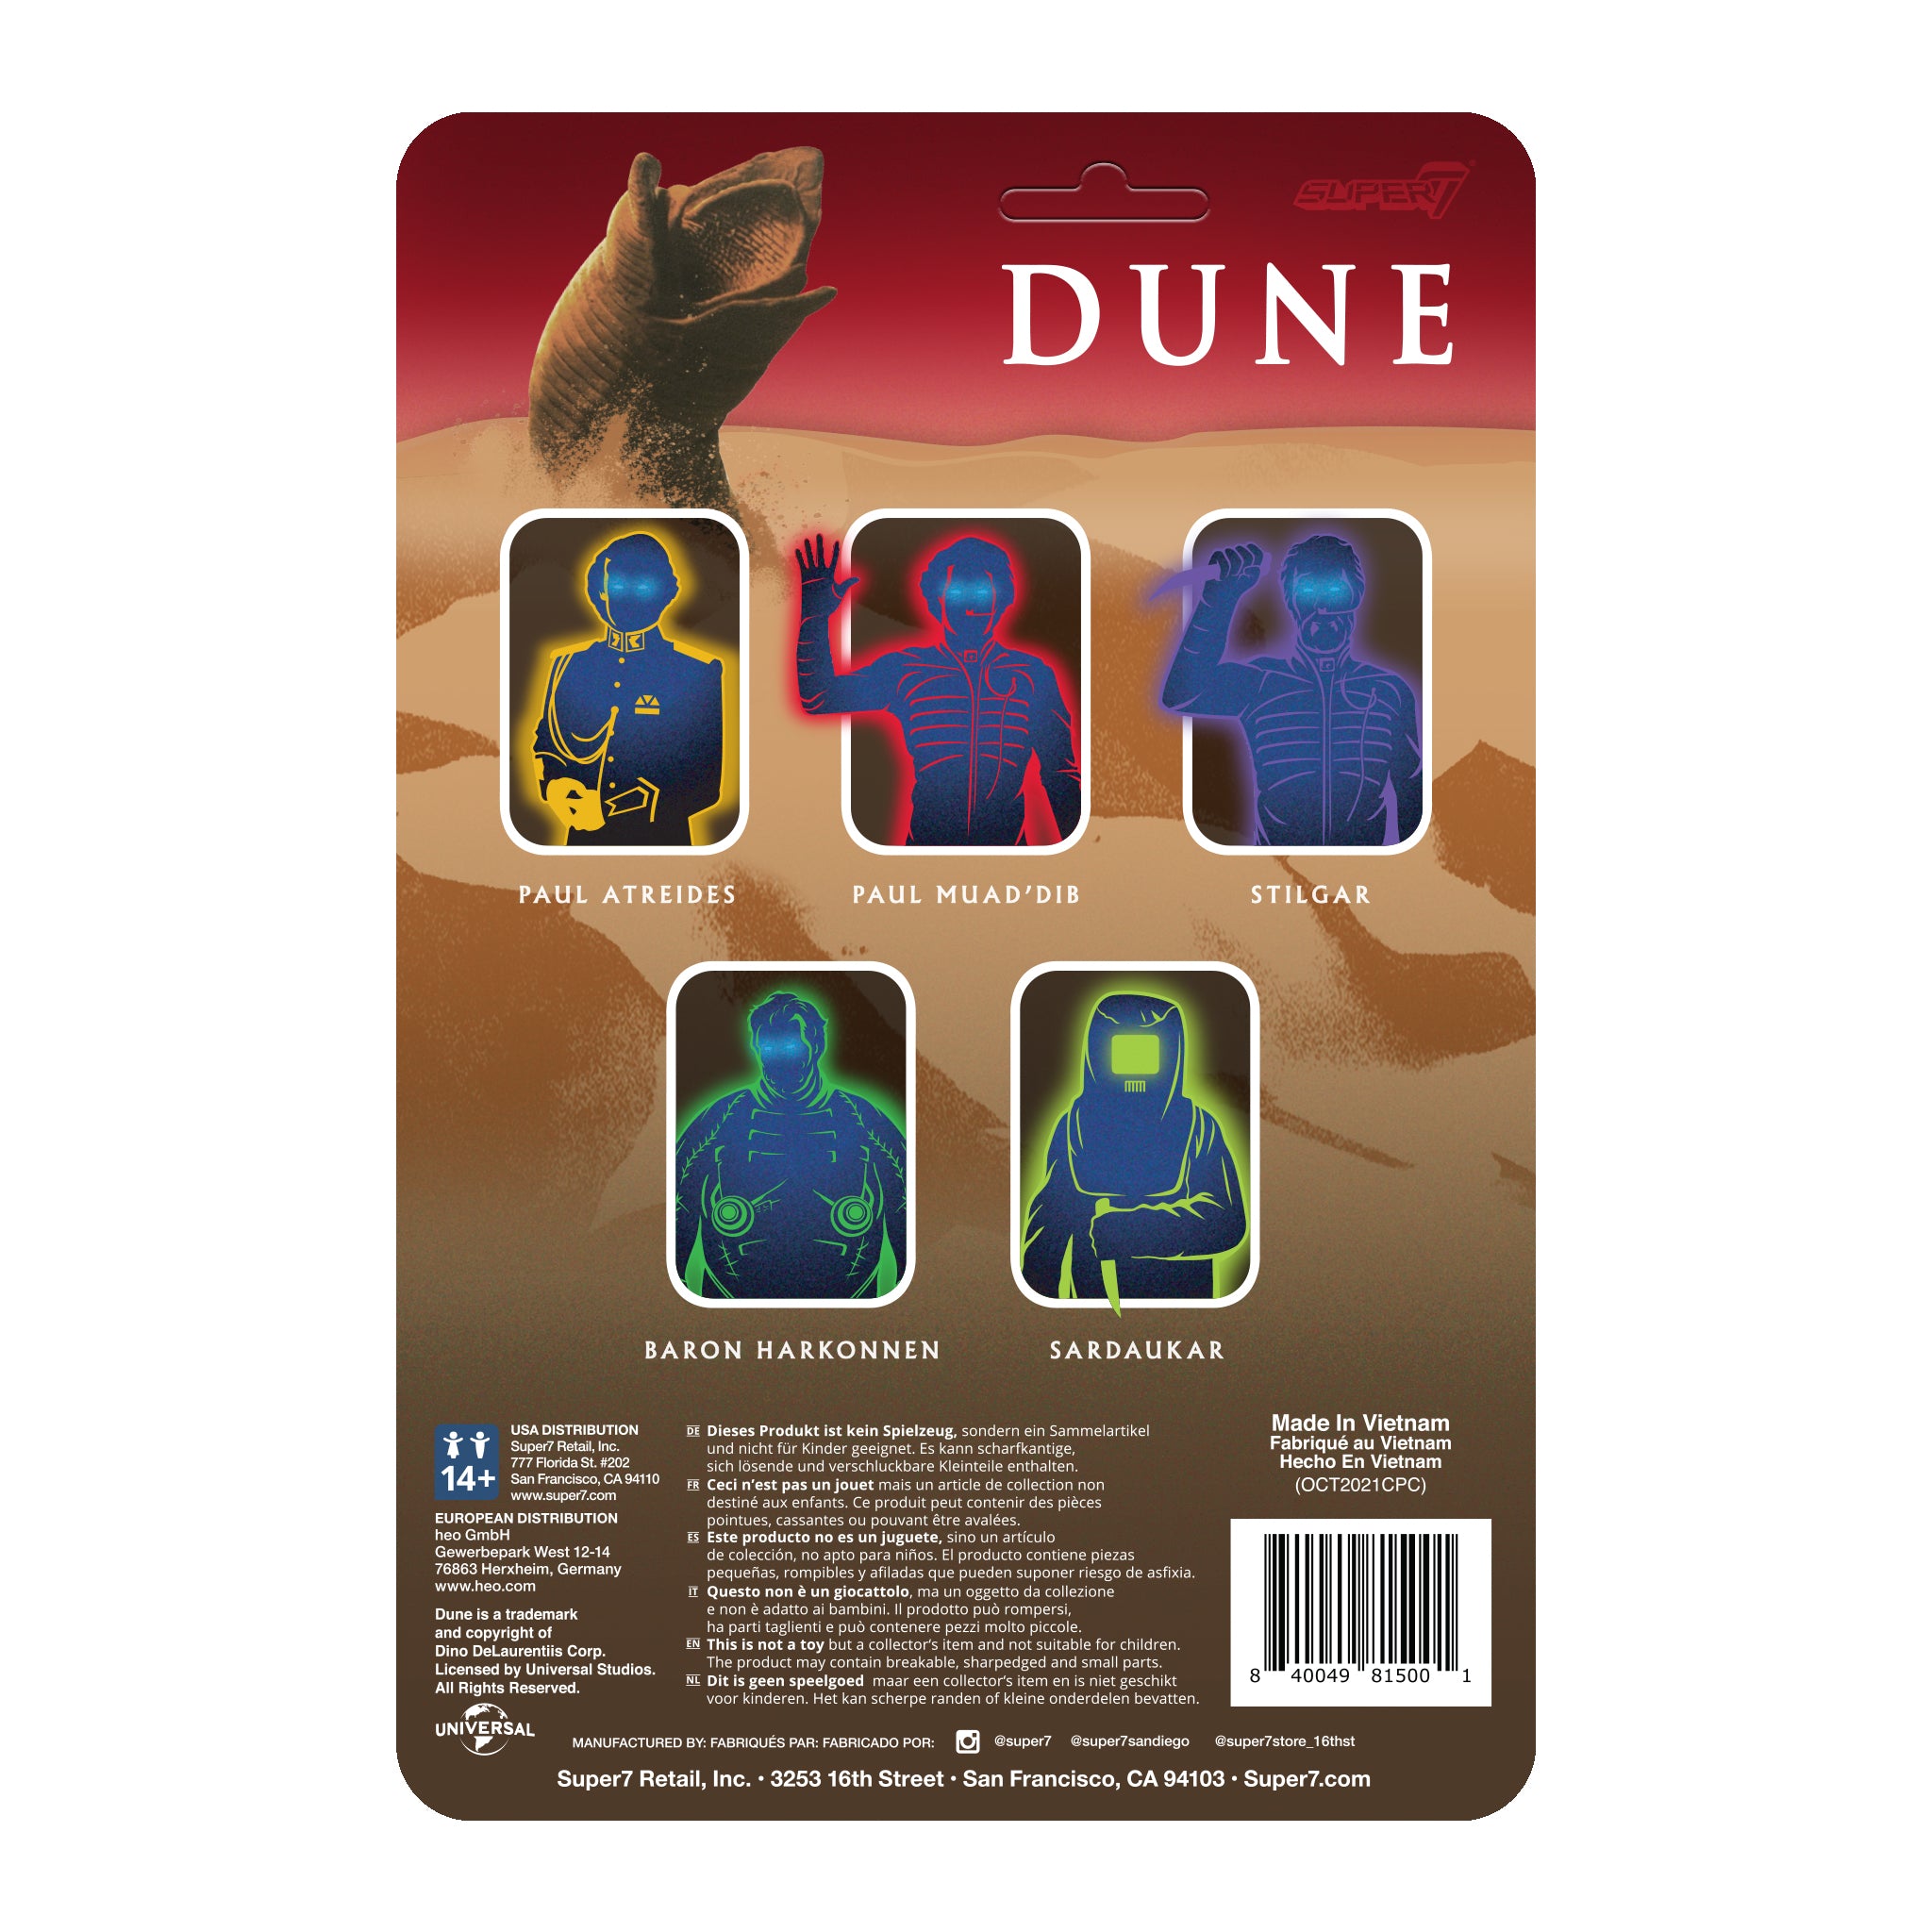 Dune ReAction Figure Wave 1 - Sardaukar Warrior